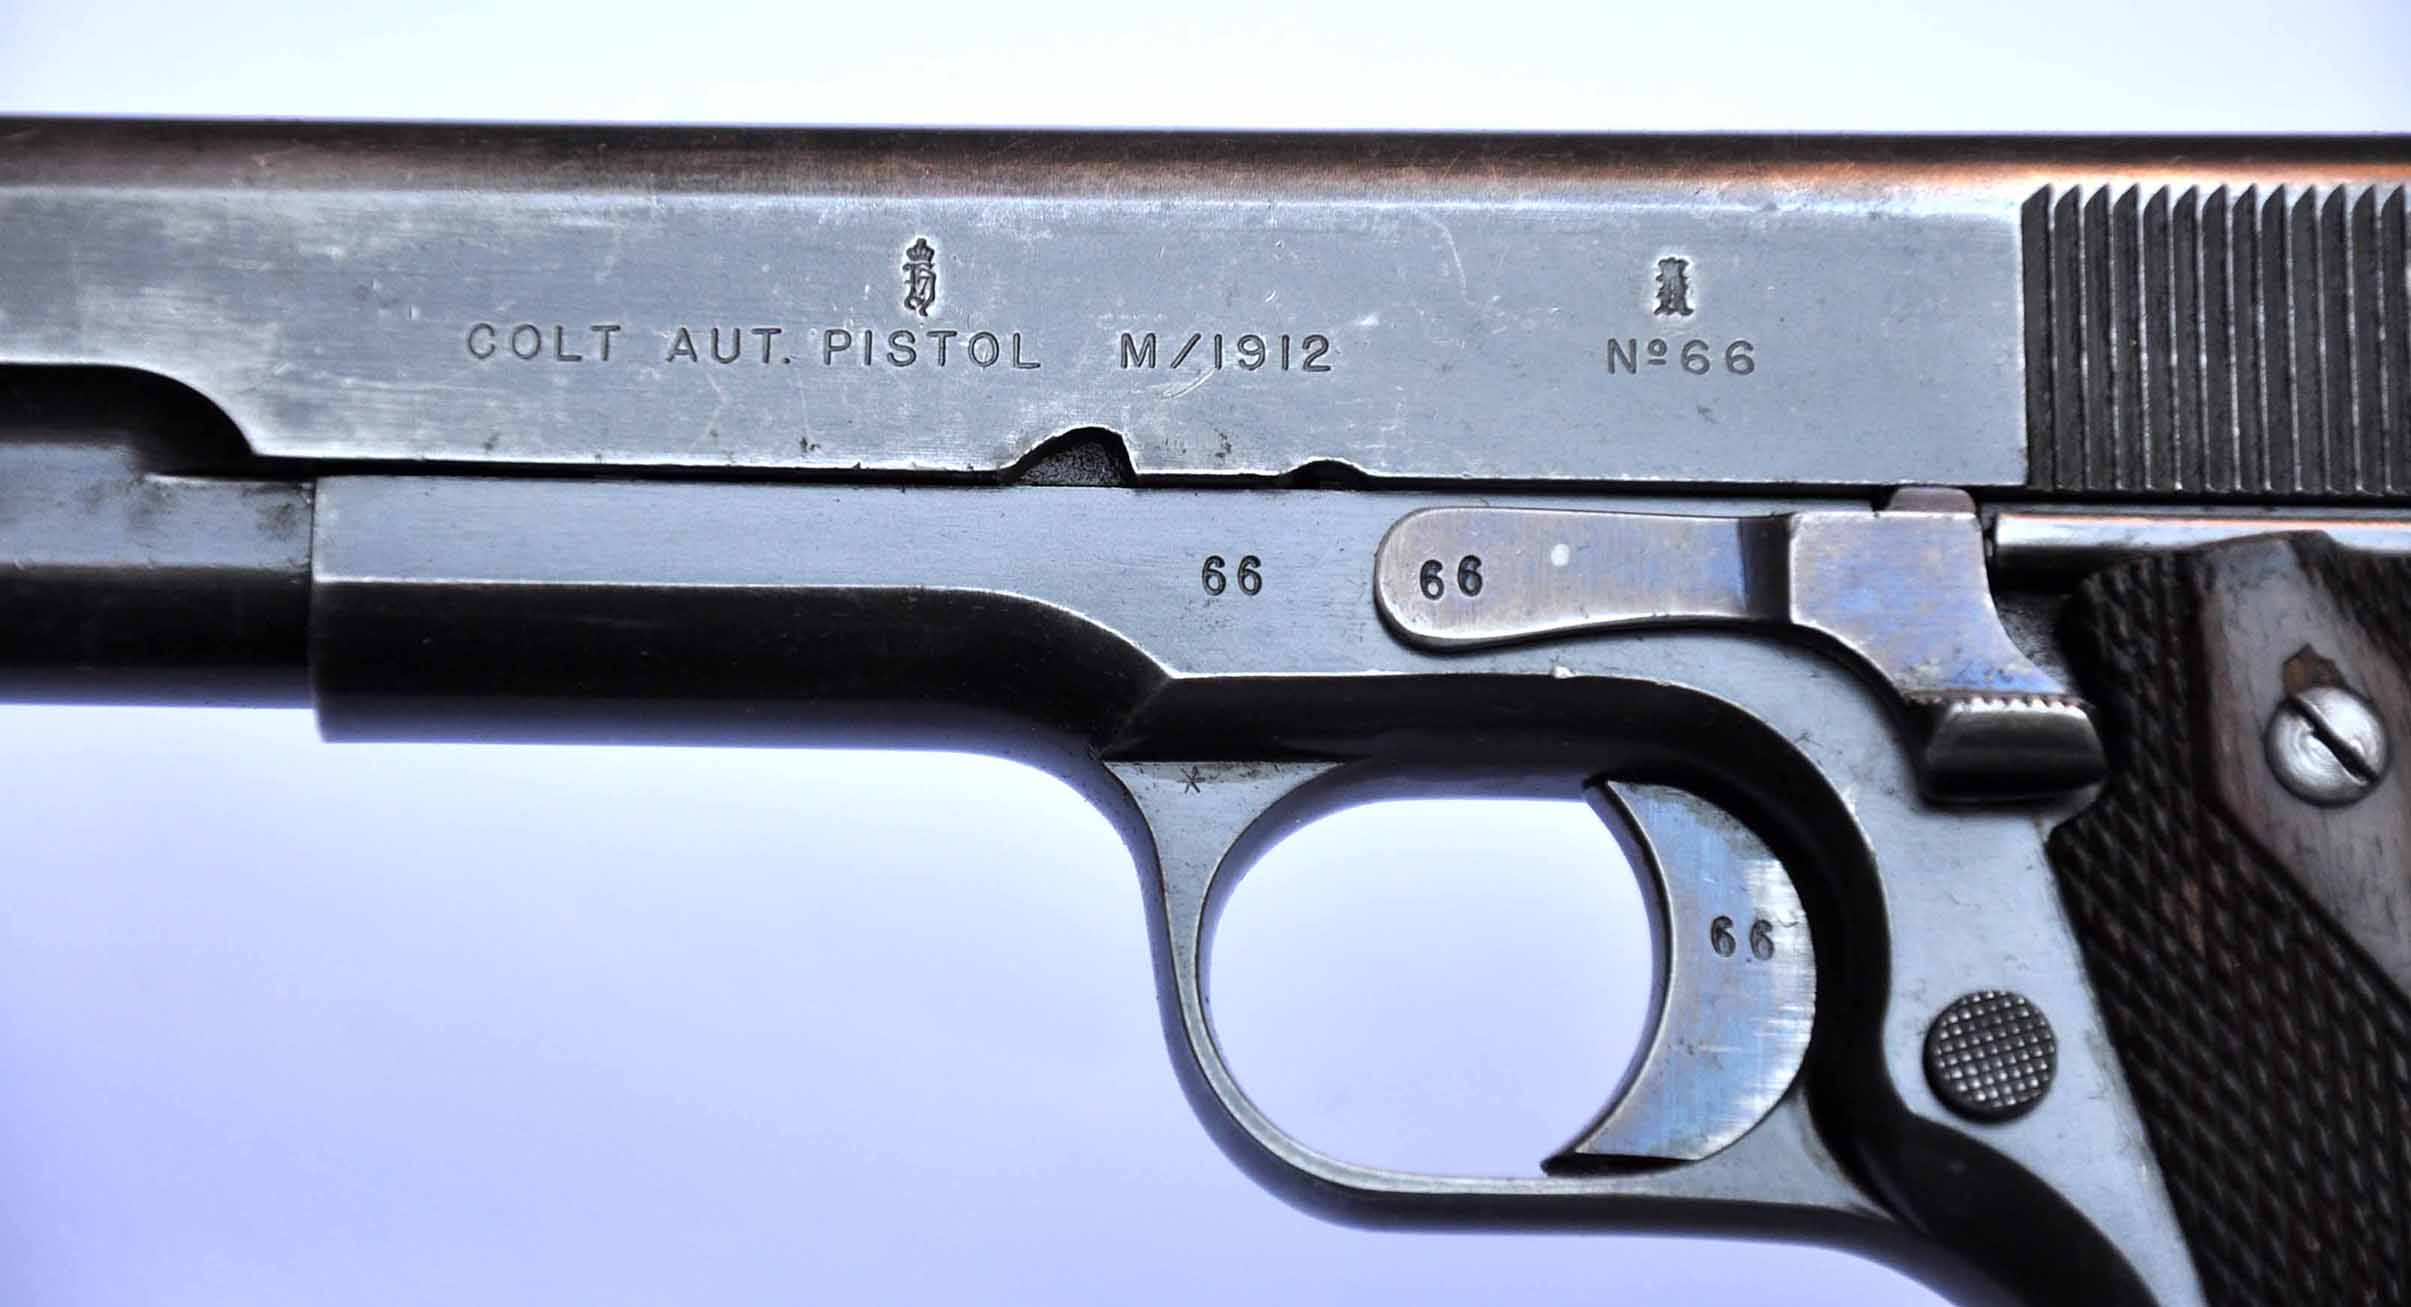 ./guns/pistol/bilder/Pistol-Kongsberg-M1914-1912-66-1.jpg